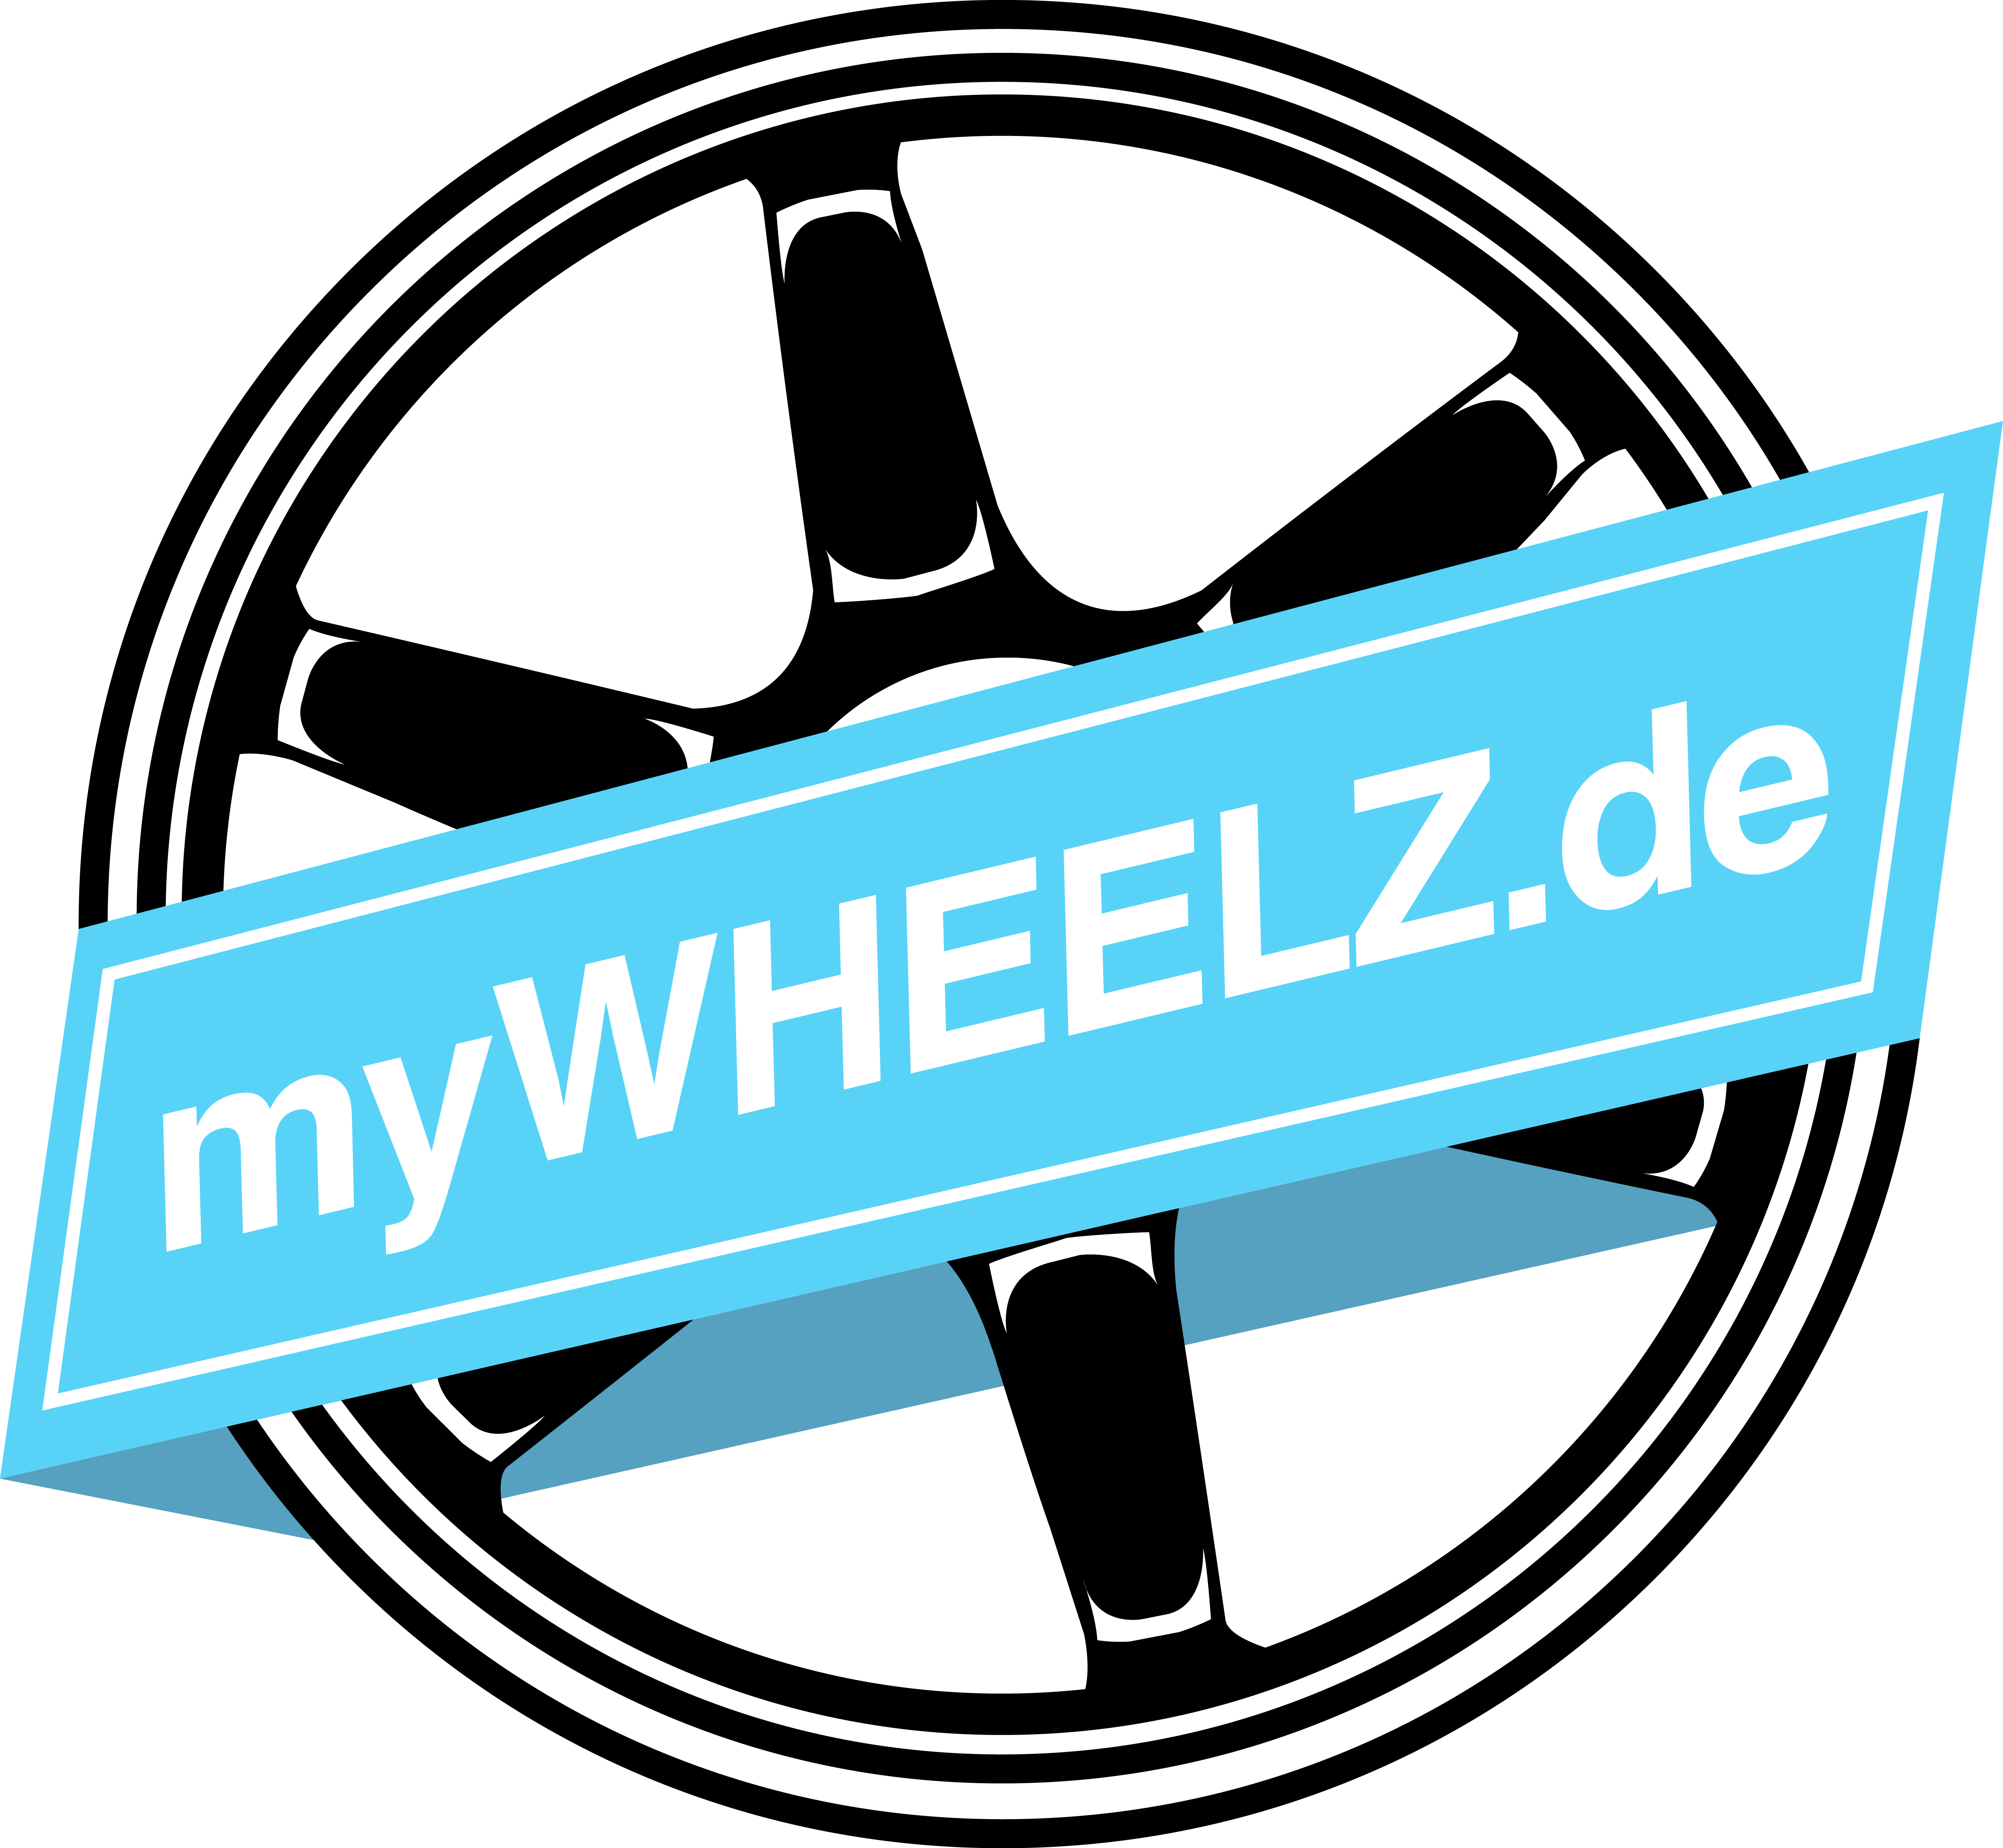 (c) Mywheelz.de